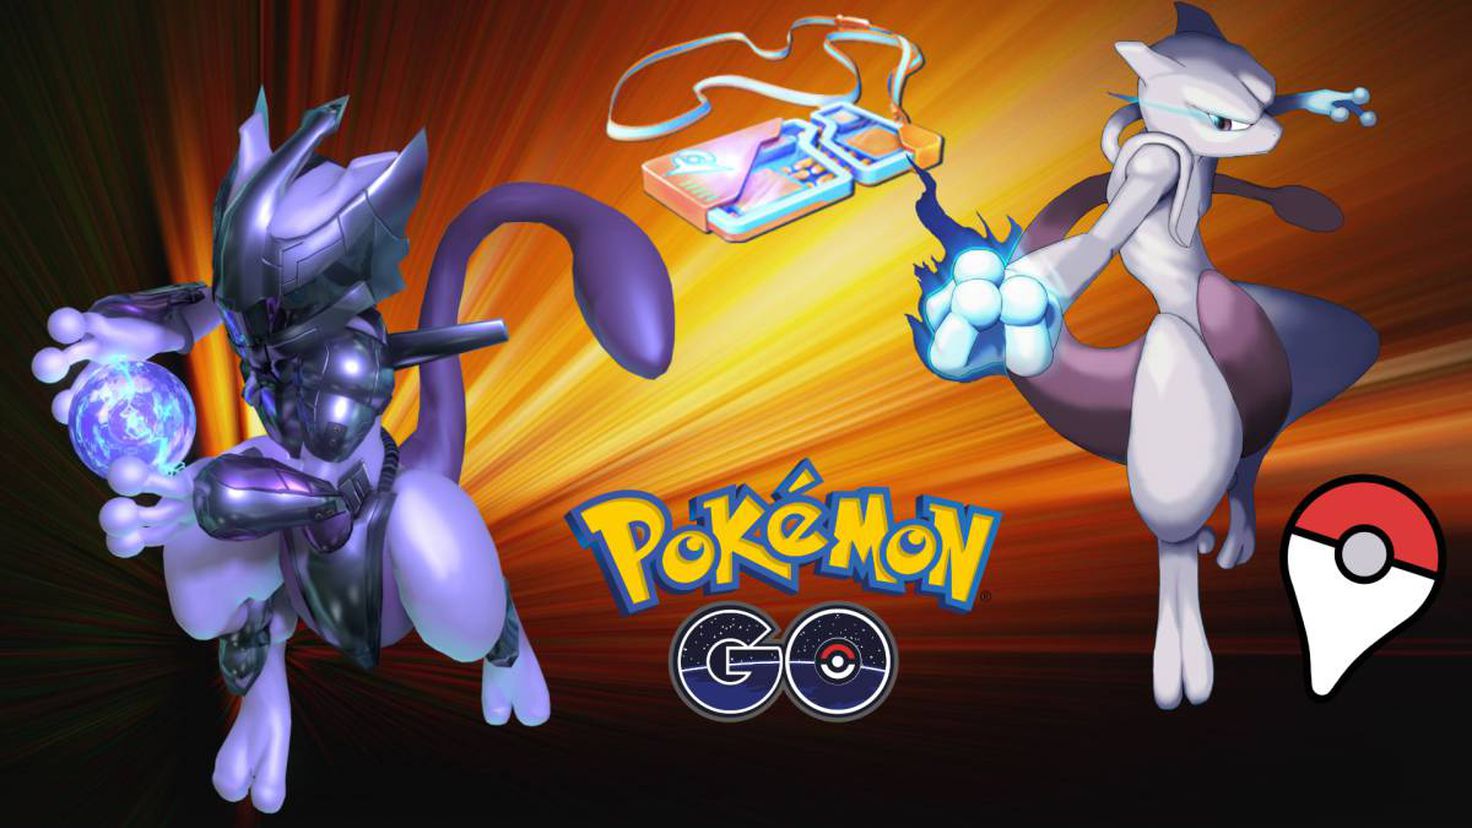 Pokémon GO GDL X પર: ¿Como les fue con su Primer Mewtwo con Armadura? 😈 # PokemonGo ¡Compartan su Captura! 💜 #GDL  / X